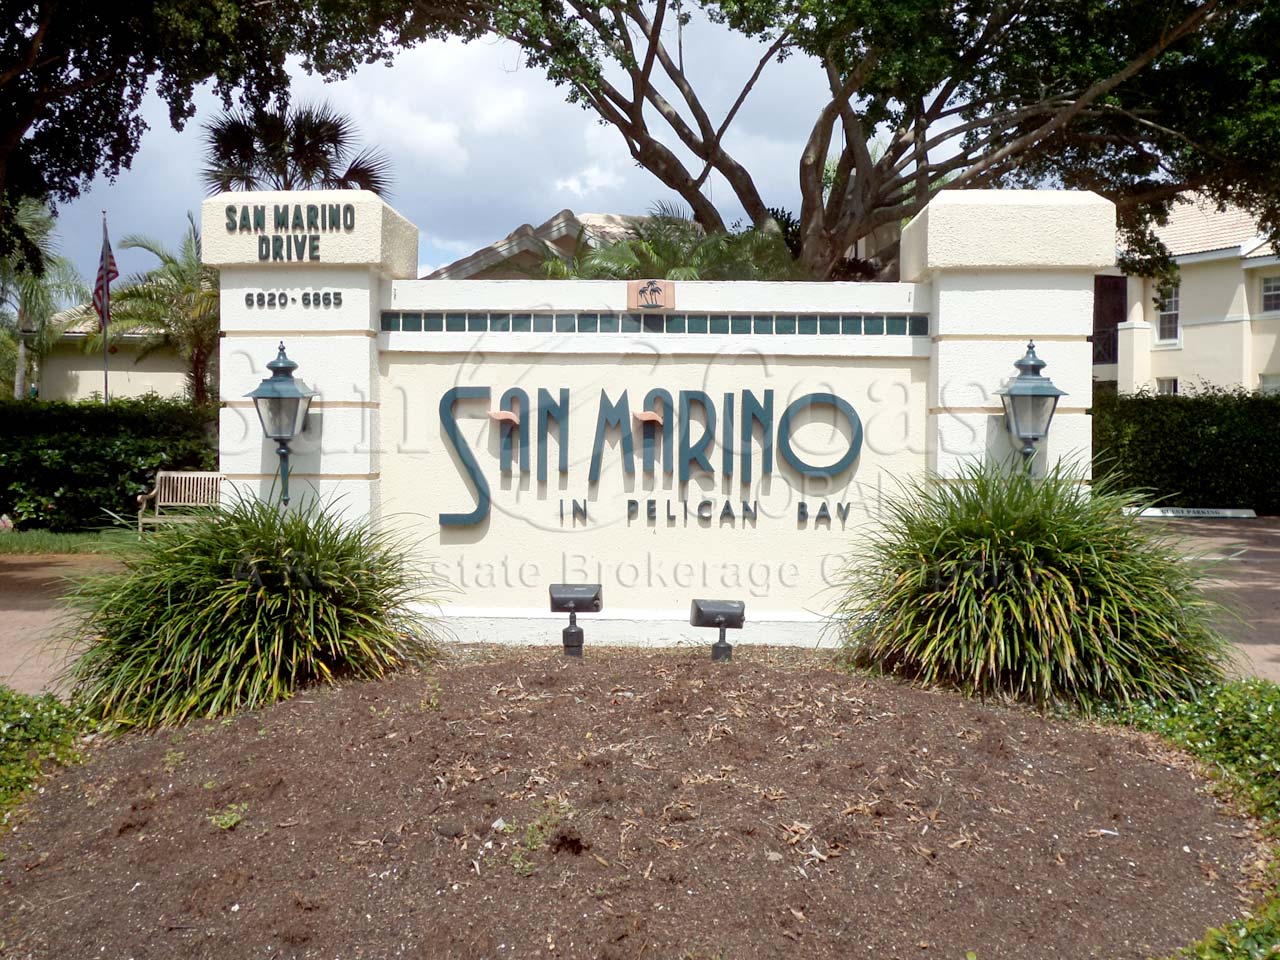 San Marino at Pelican Bay sign